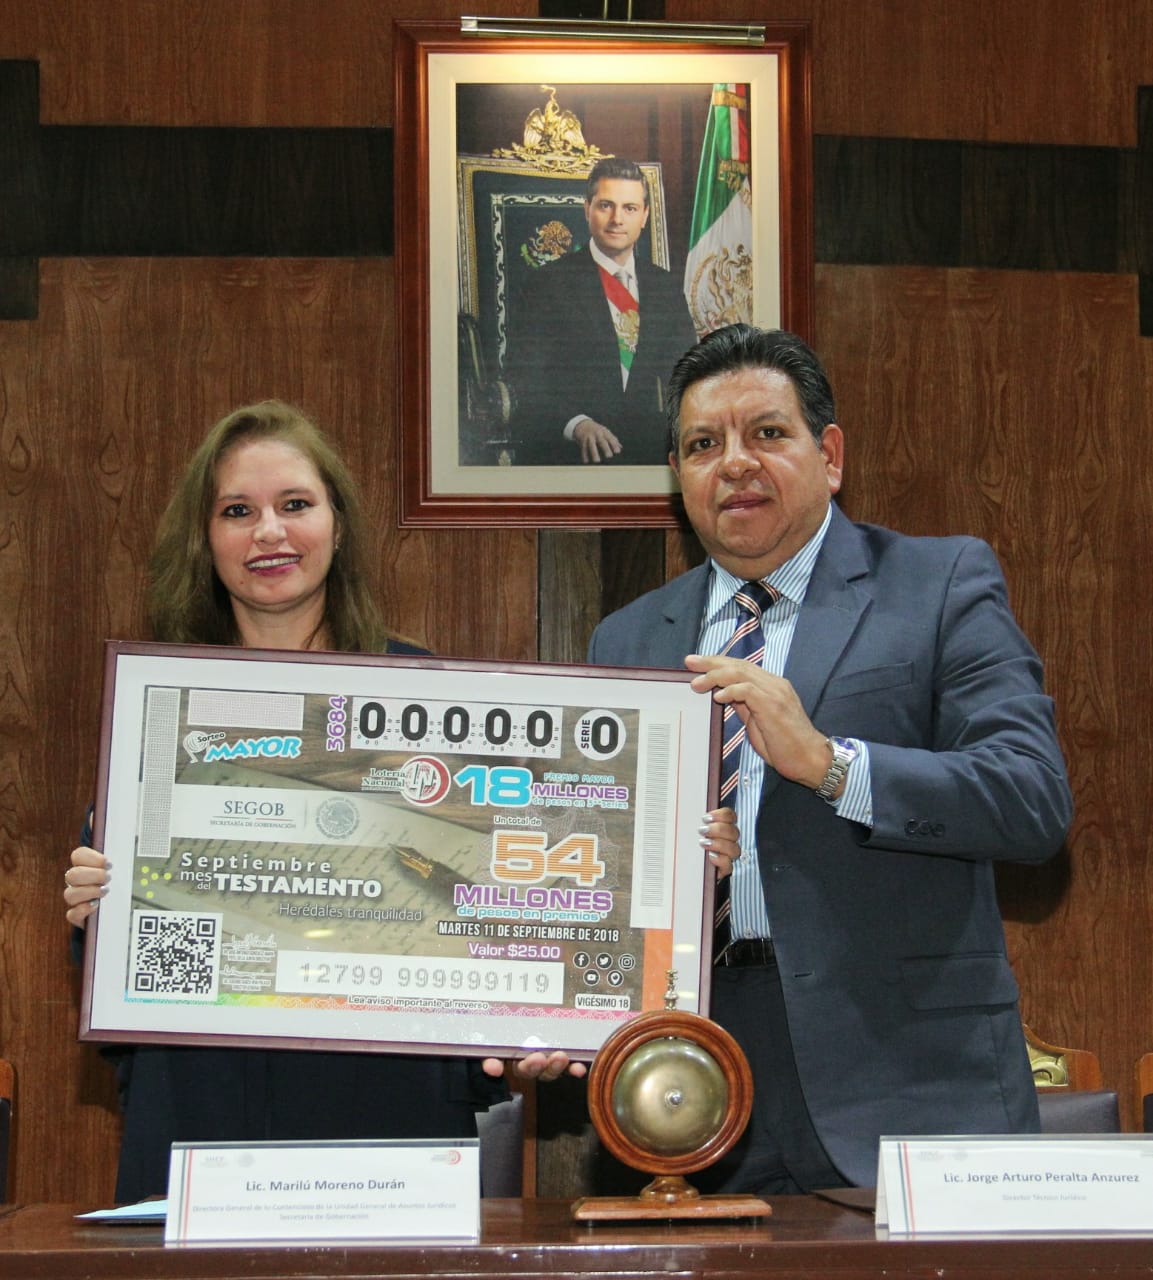 Fotografía donde posan con el billete del Sorteo Mayor, de izquierda a derecha: Jorge Arturo Peralta Anzurez y Marilú Moreno Durán.